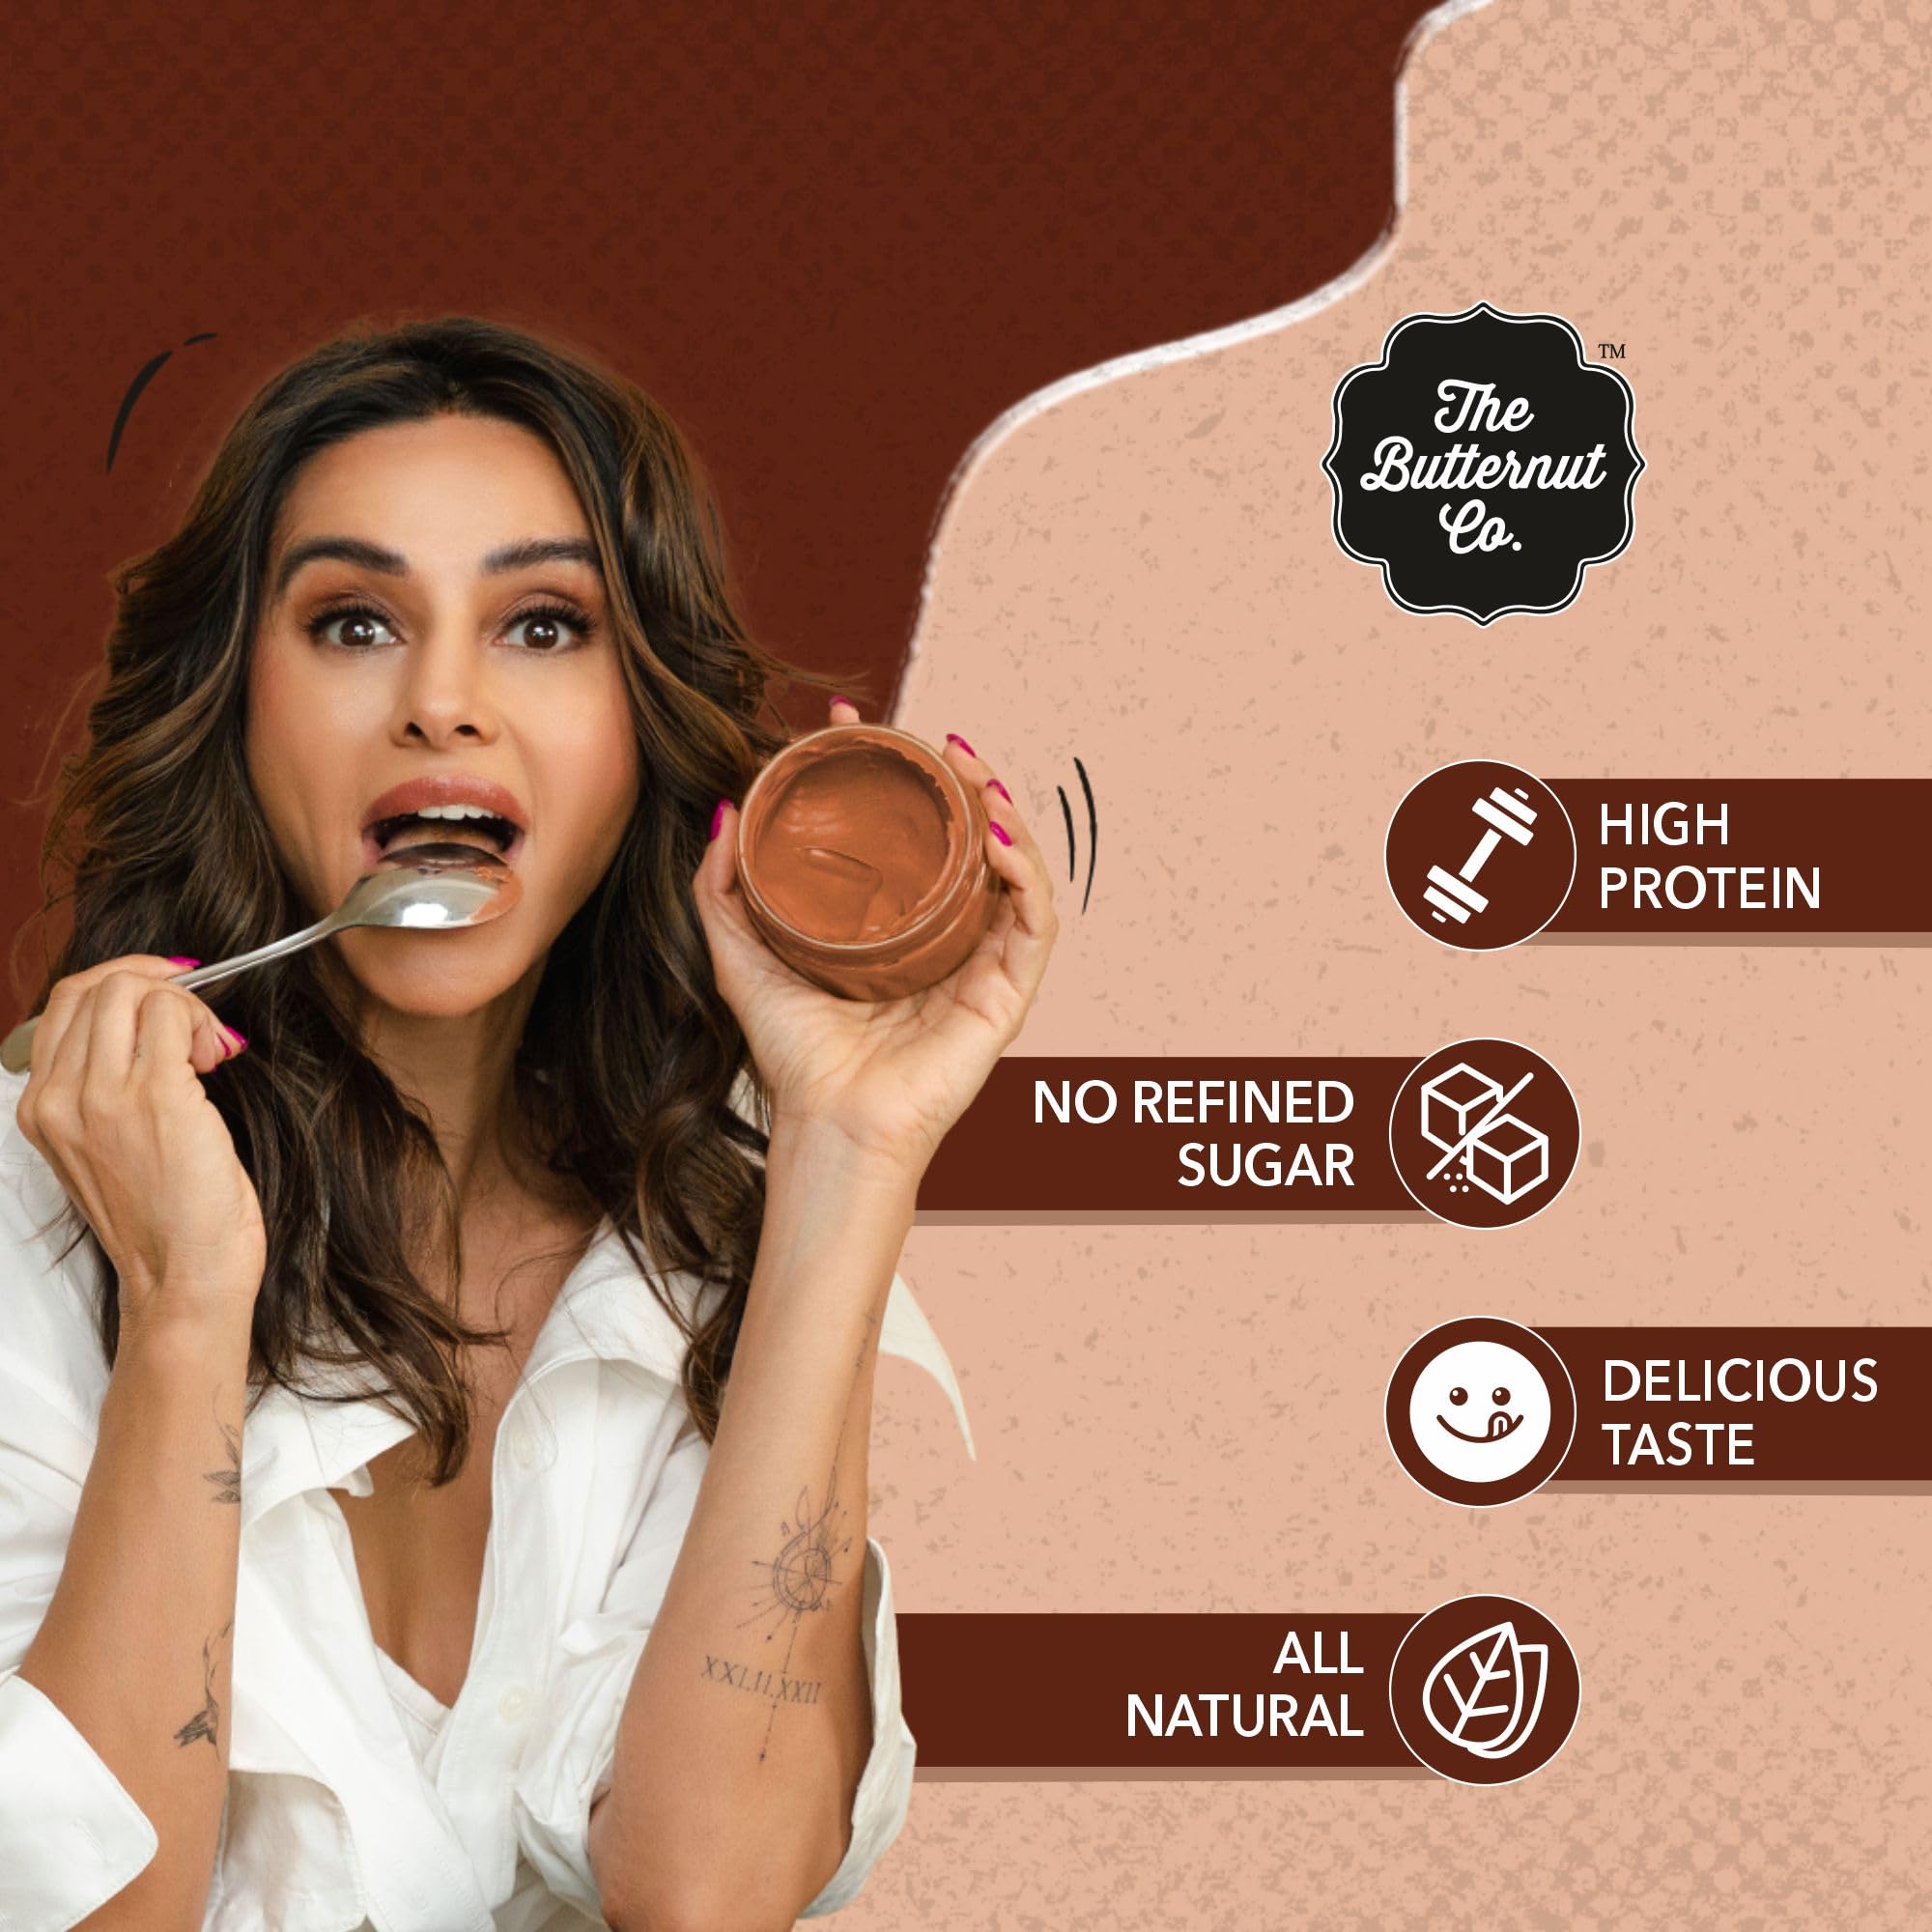 The Butternut Co. Chocolate Hazelnut Spread (Creamy) | No Refined Sugar | Goodness of Hazelnut, 180 gm